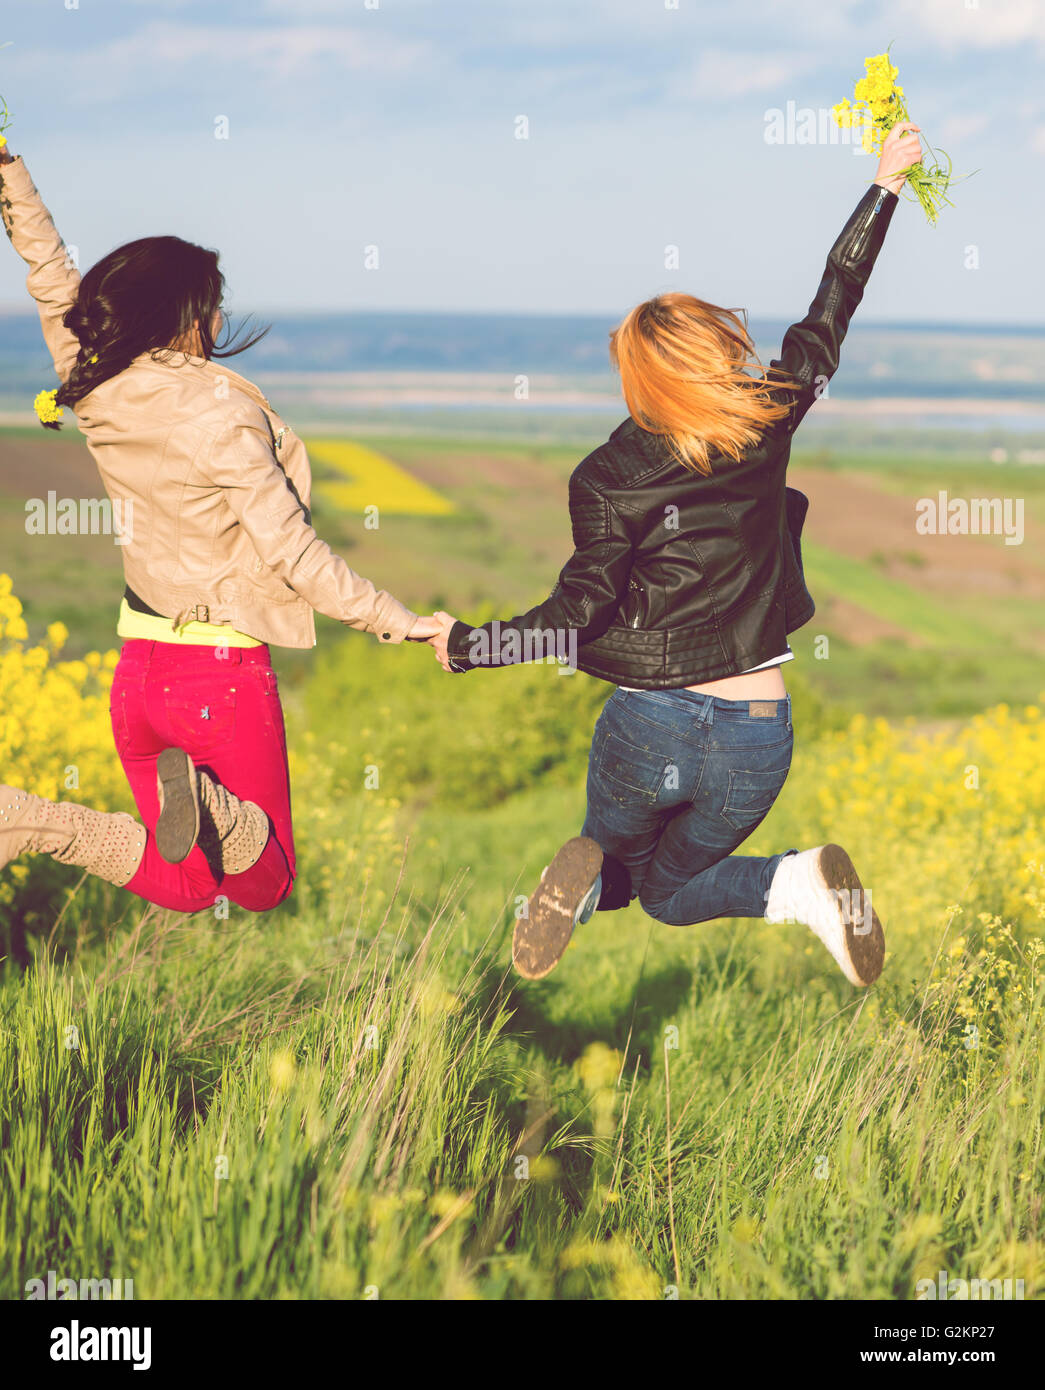 zwei beste Freundin in einem Feld mit gelben Blüten von Raps Spaß Stockfoto